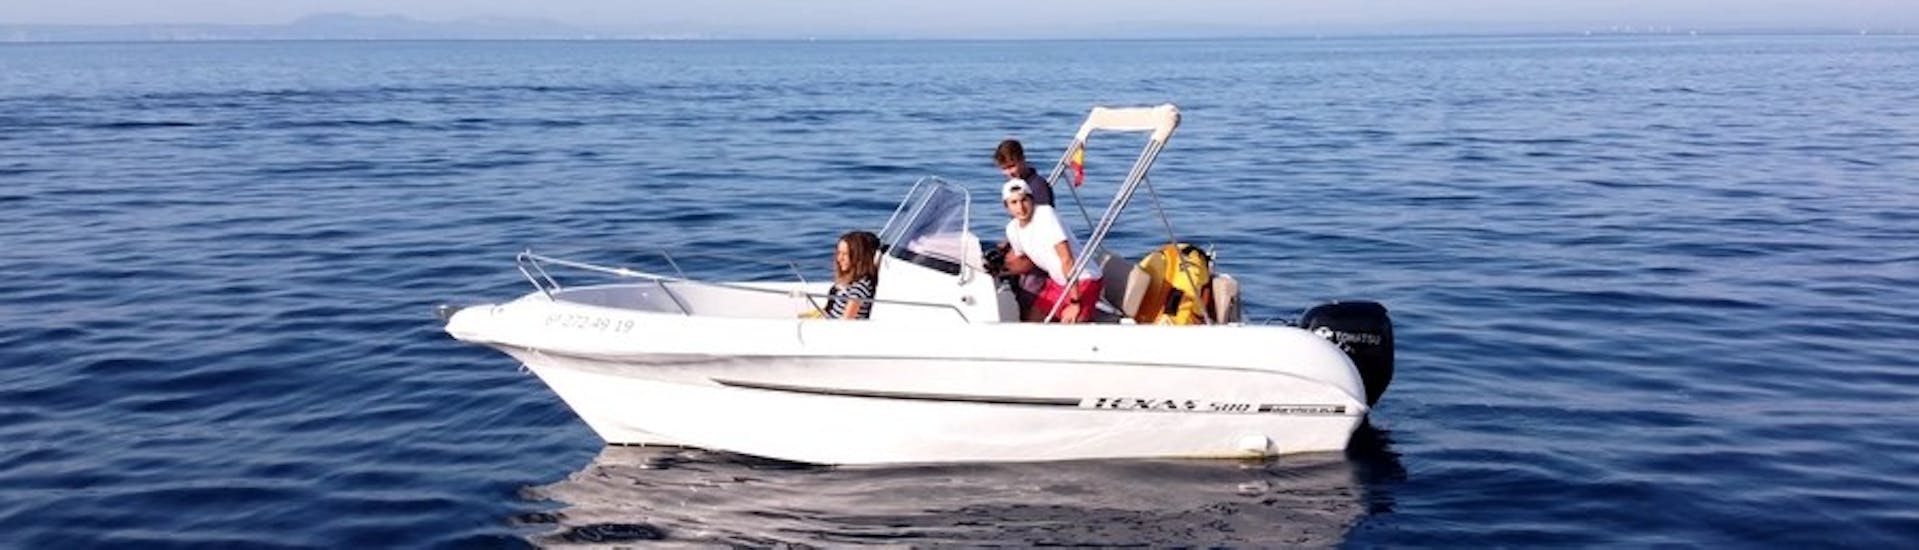 Il moderno motoscafo TEXAS 580 con un gruppo di partecipanti che si divertono navigando sulle acque turchesi della baia delle rose durante il noleggio barca in Costa Brava per un massimo di 6 persone con patente con Maxi Boats Costa Brava.